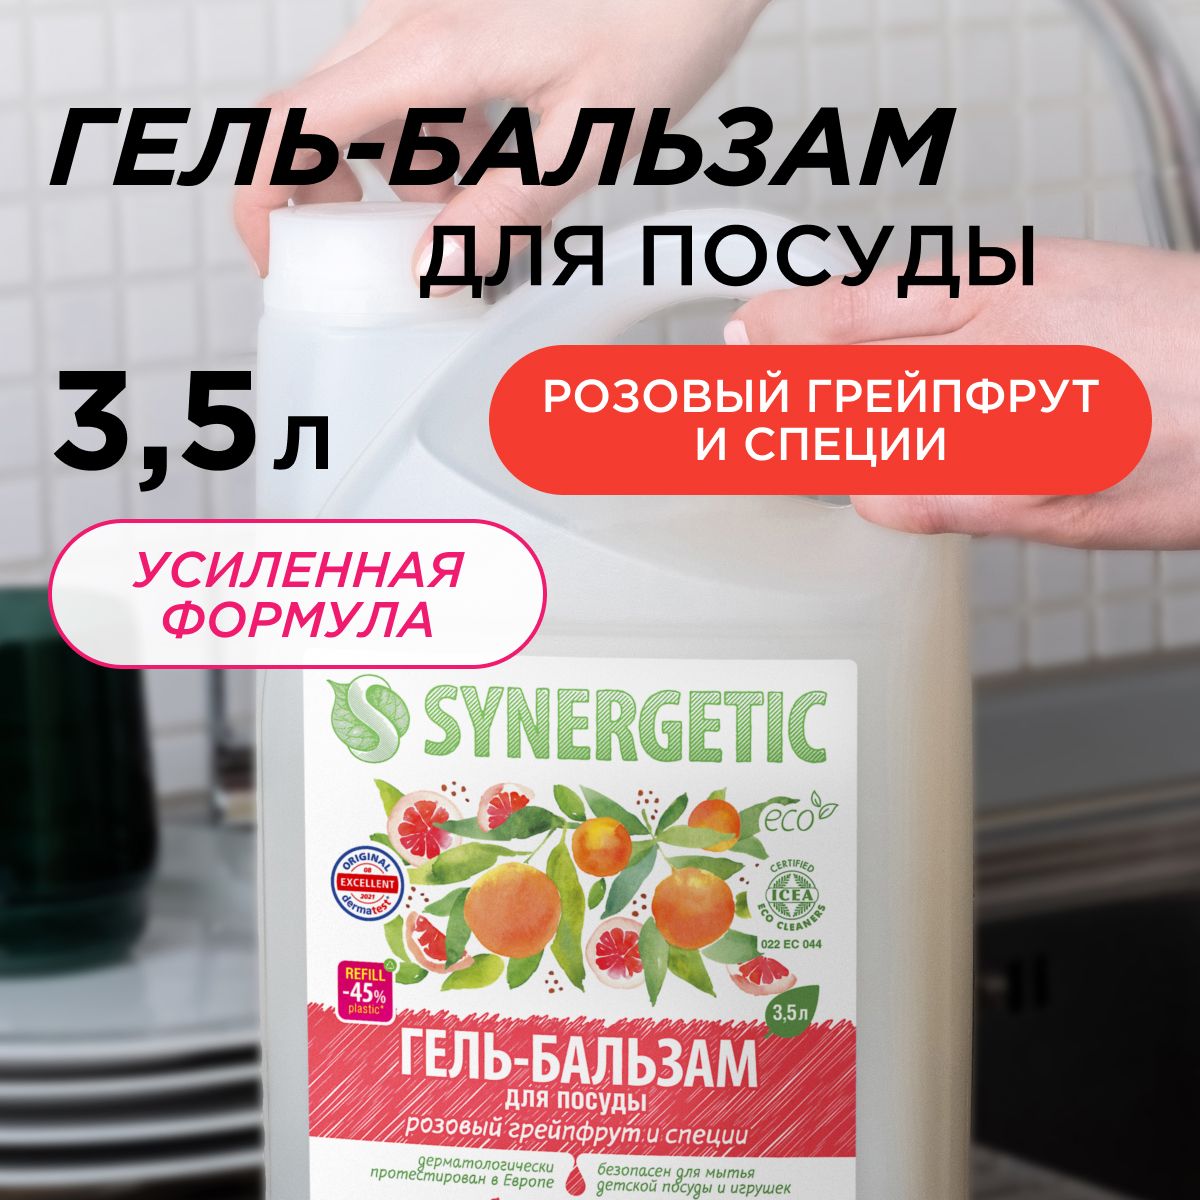 Средстводлямытьяпосудыидетскихигрушек(гель-бальзам)SYNERGETIC"Розовыйгрейпфрутиспеции"3,5л